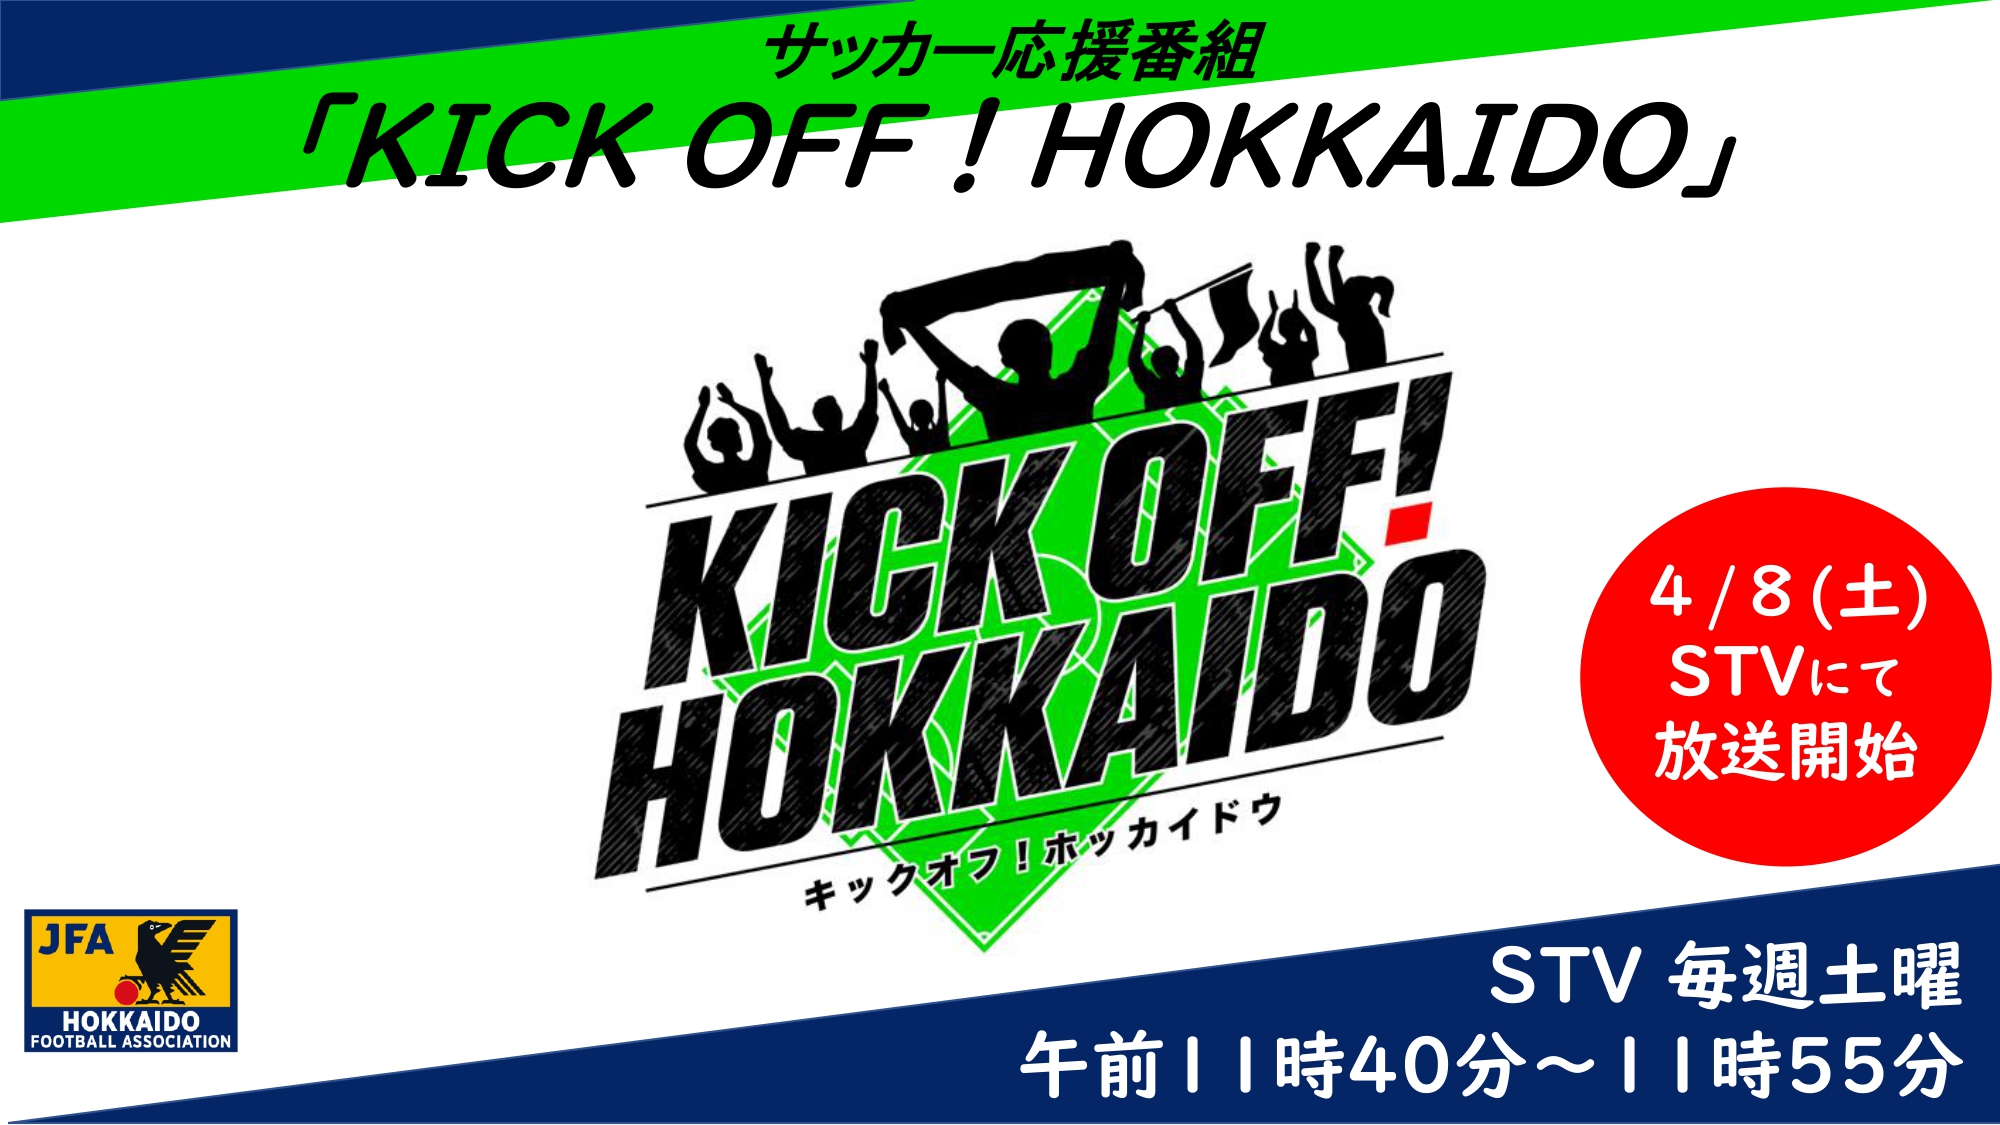 サッカー応援番組「KICKOFF！HOKKAIDO」4/8(土)から放送開始のお知らせ